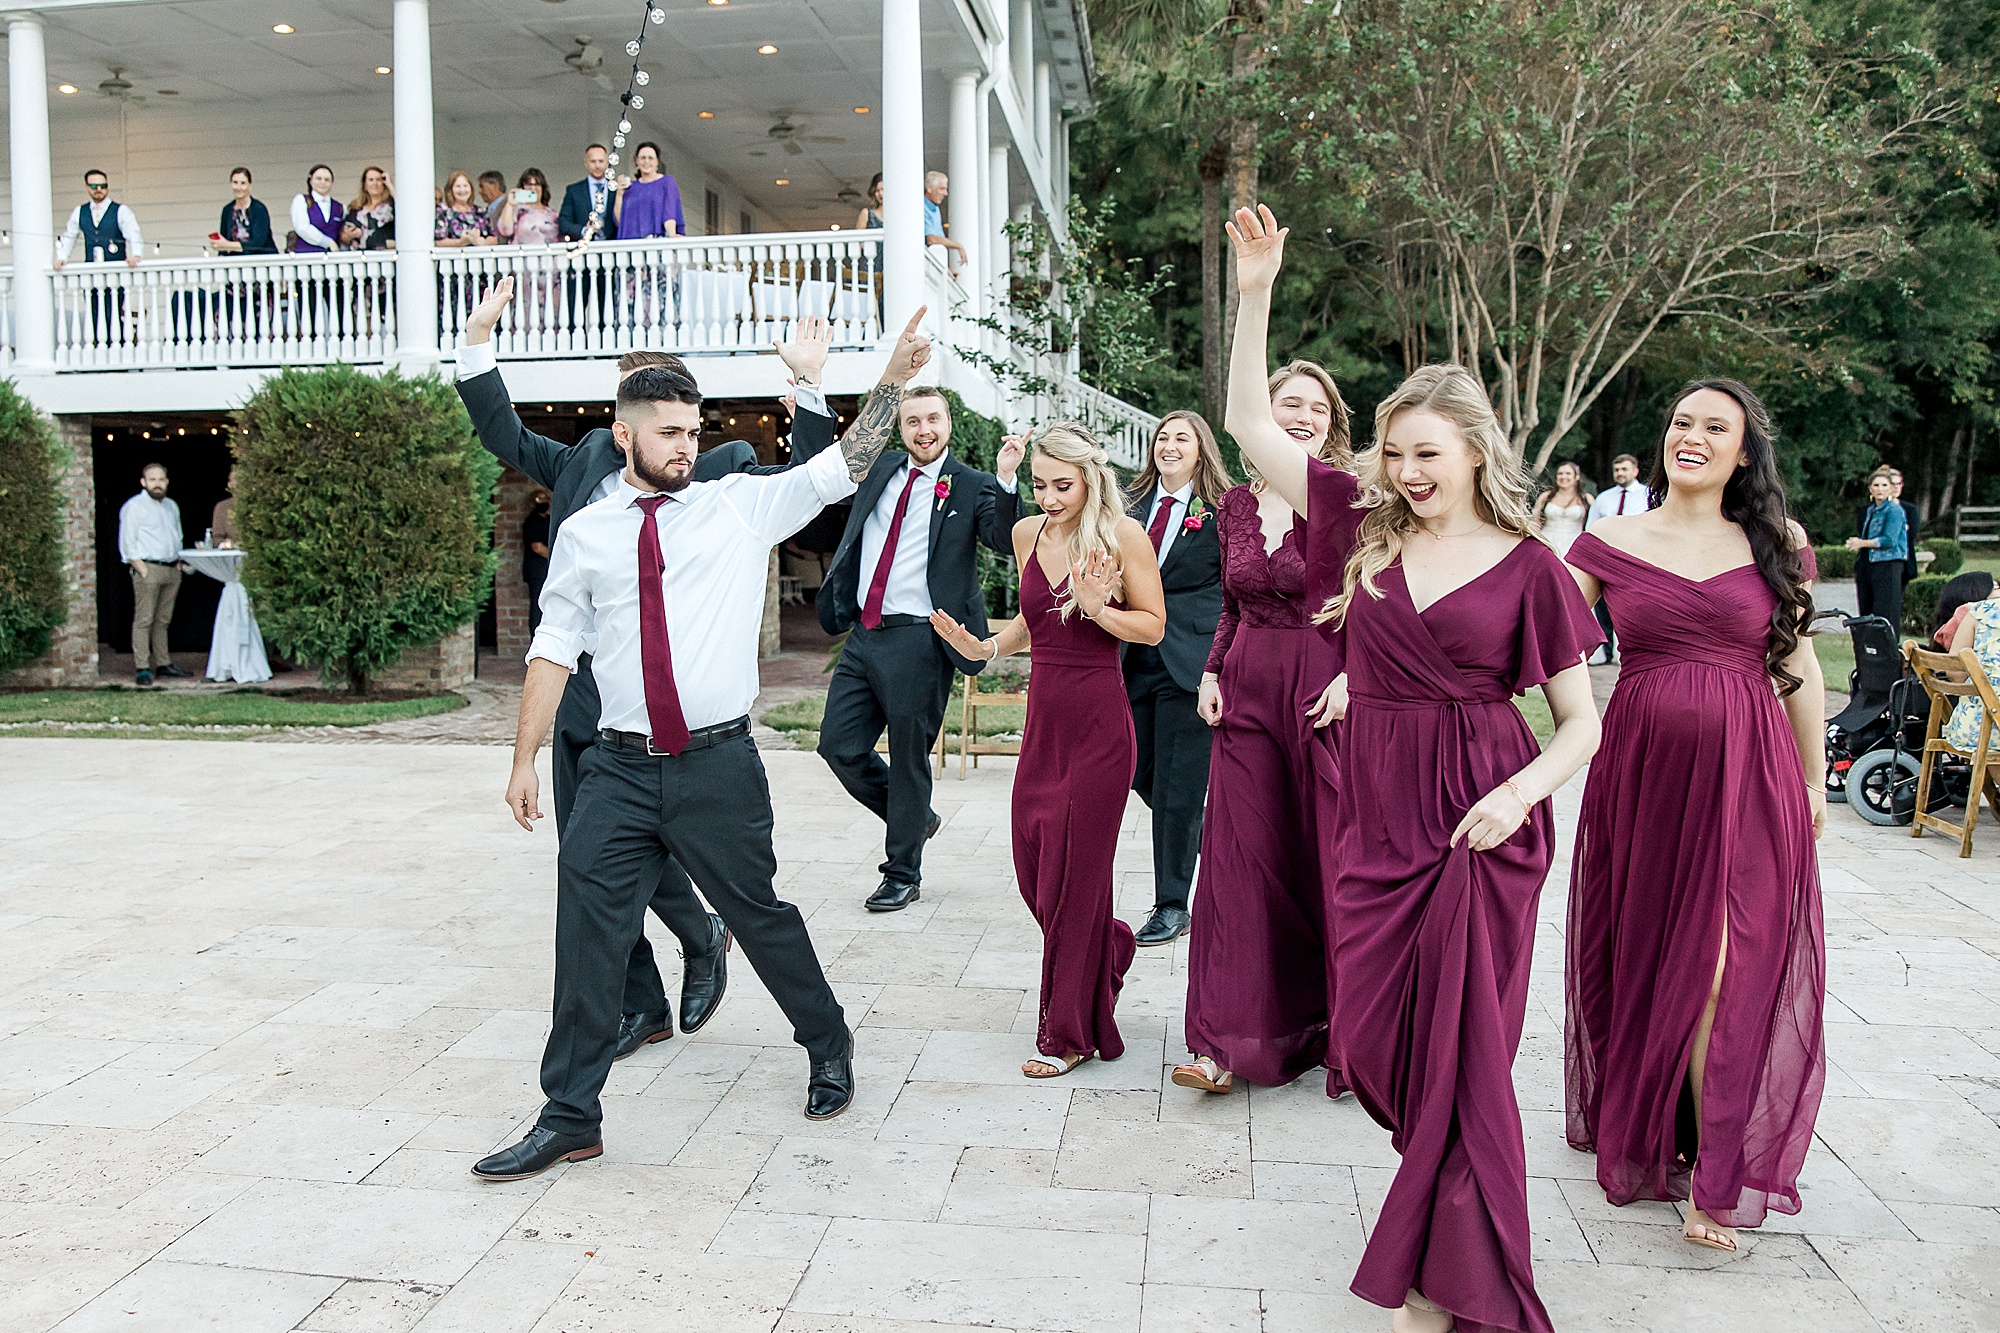 bridal party entering dance floor at outdoor reception